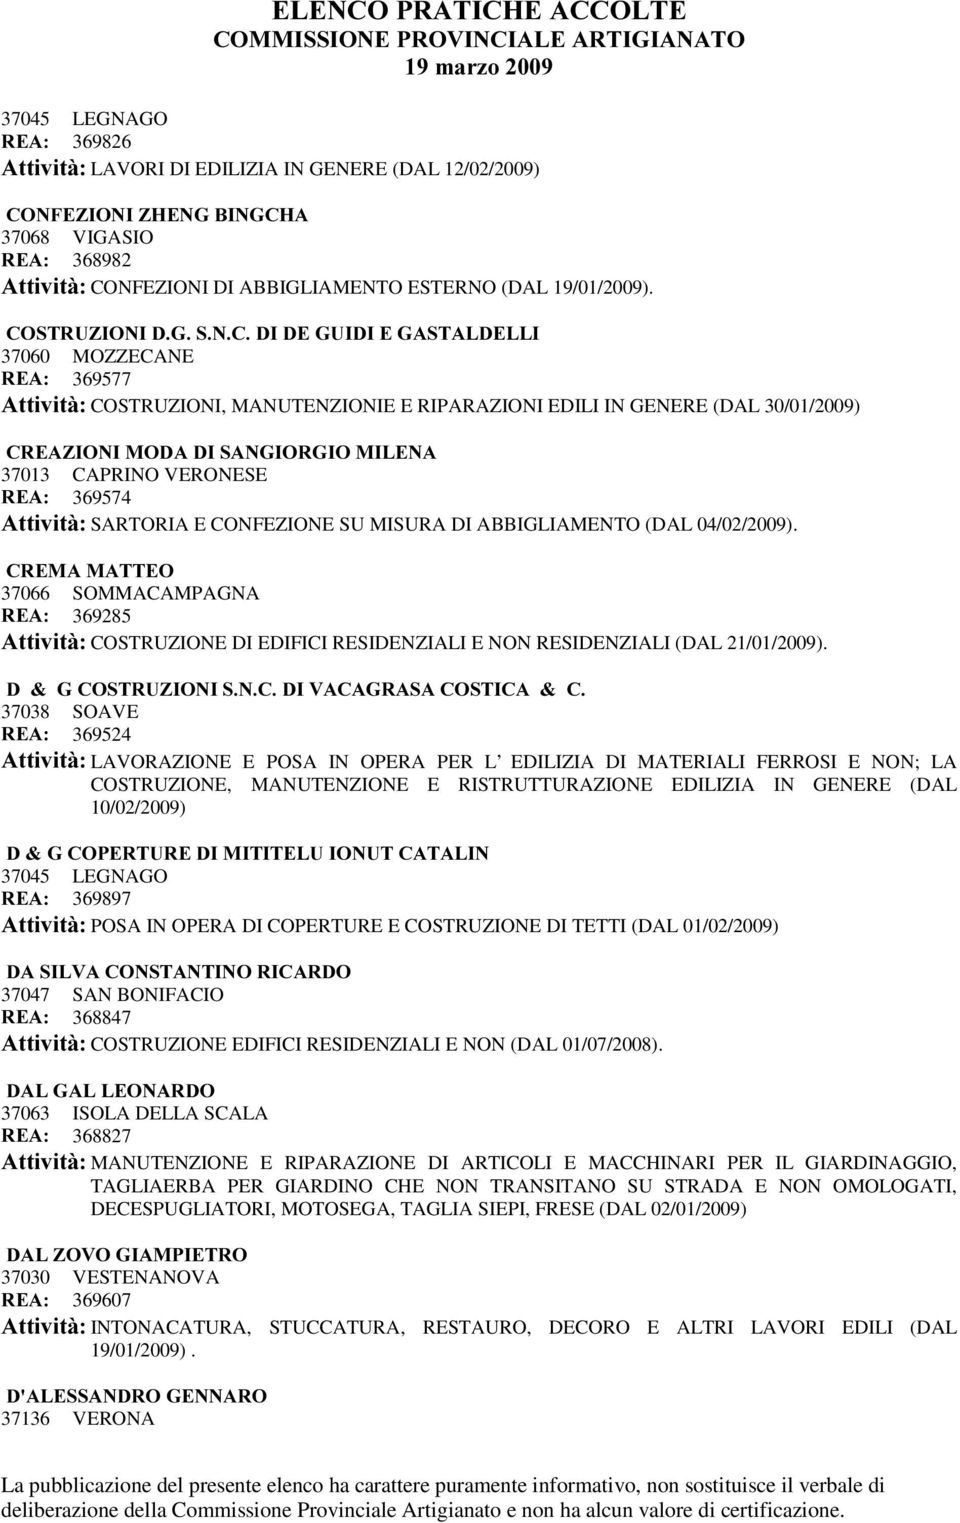 VERONESE 5($ 369574 $WWLYLWj SARTORIA E CONFEZIONE SU MISURA DI ABBIGLIAMENTO (DAL 04/02/2009).